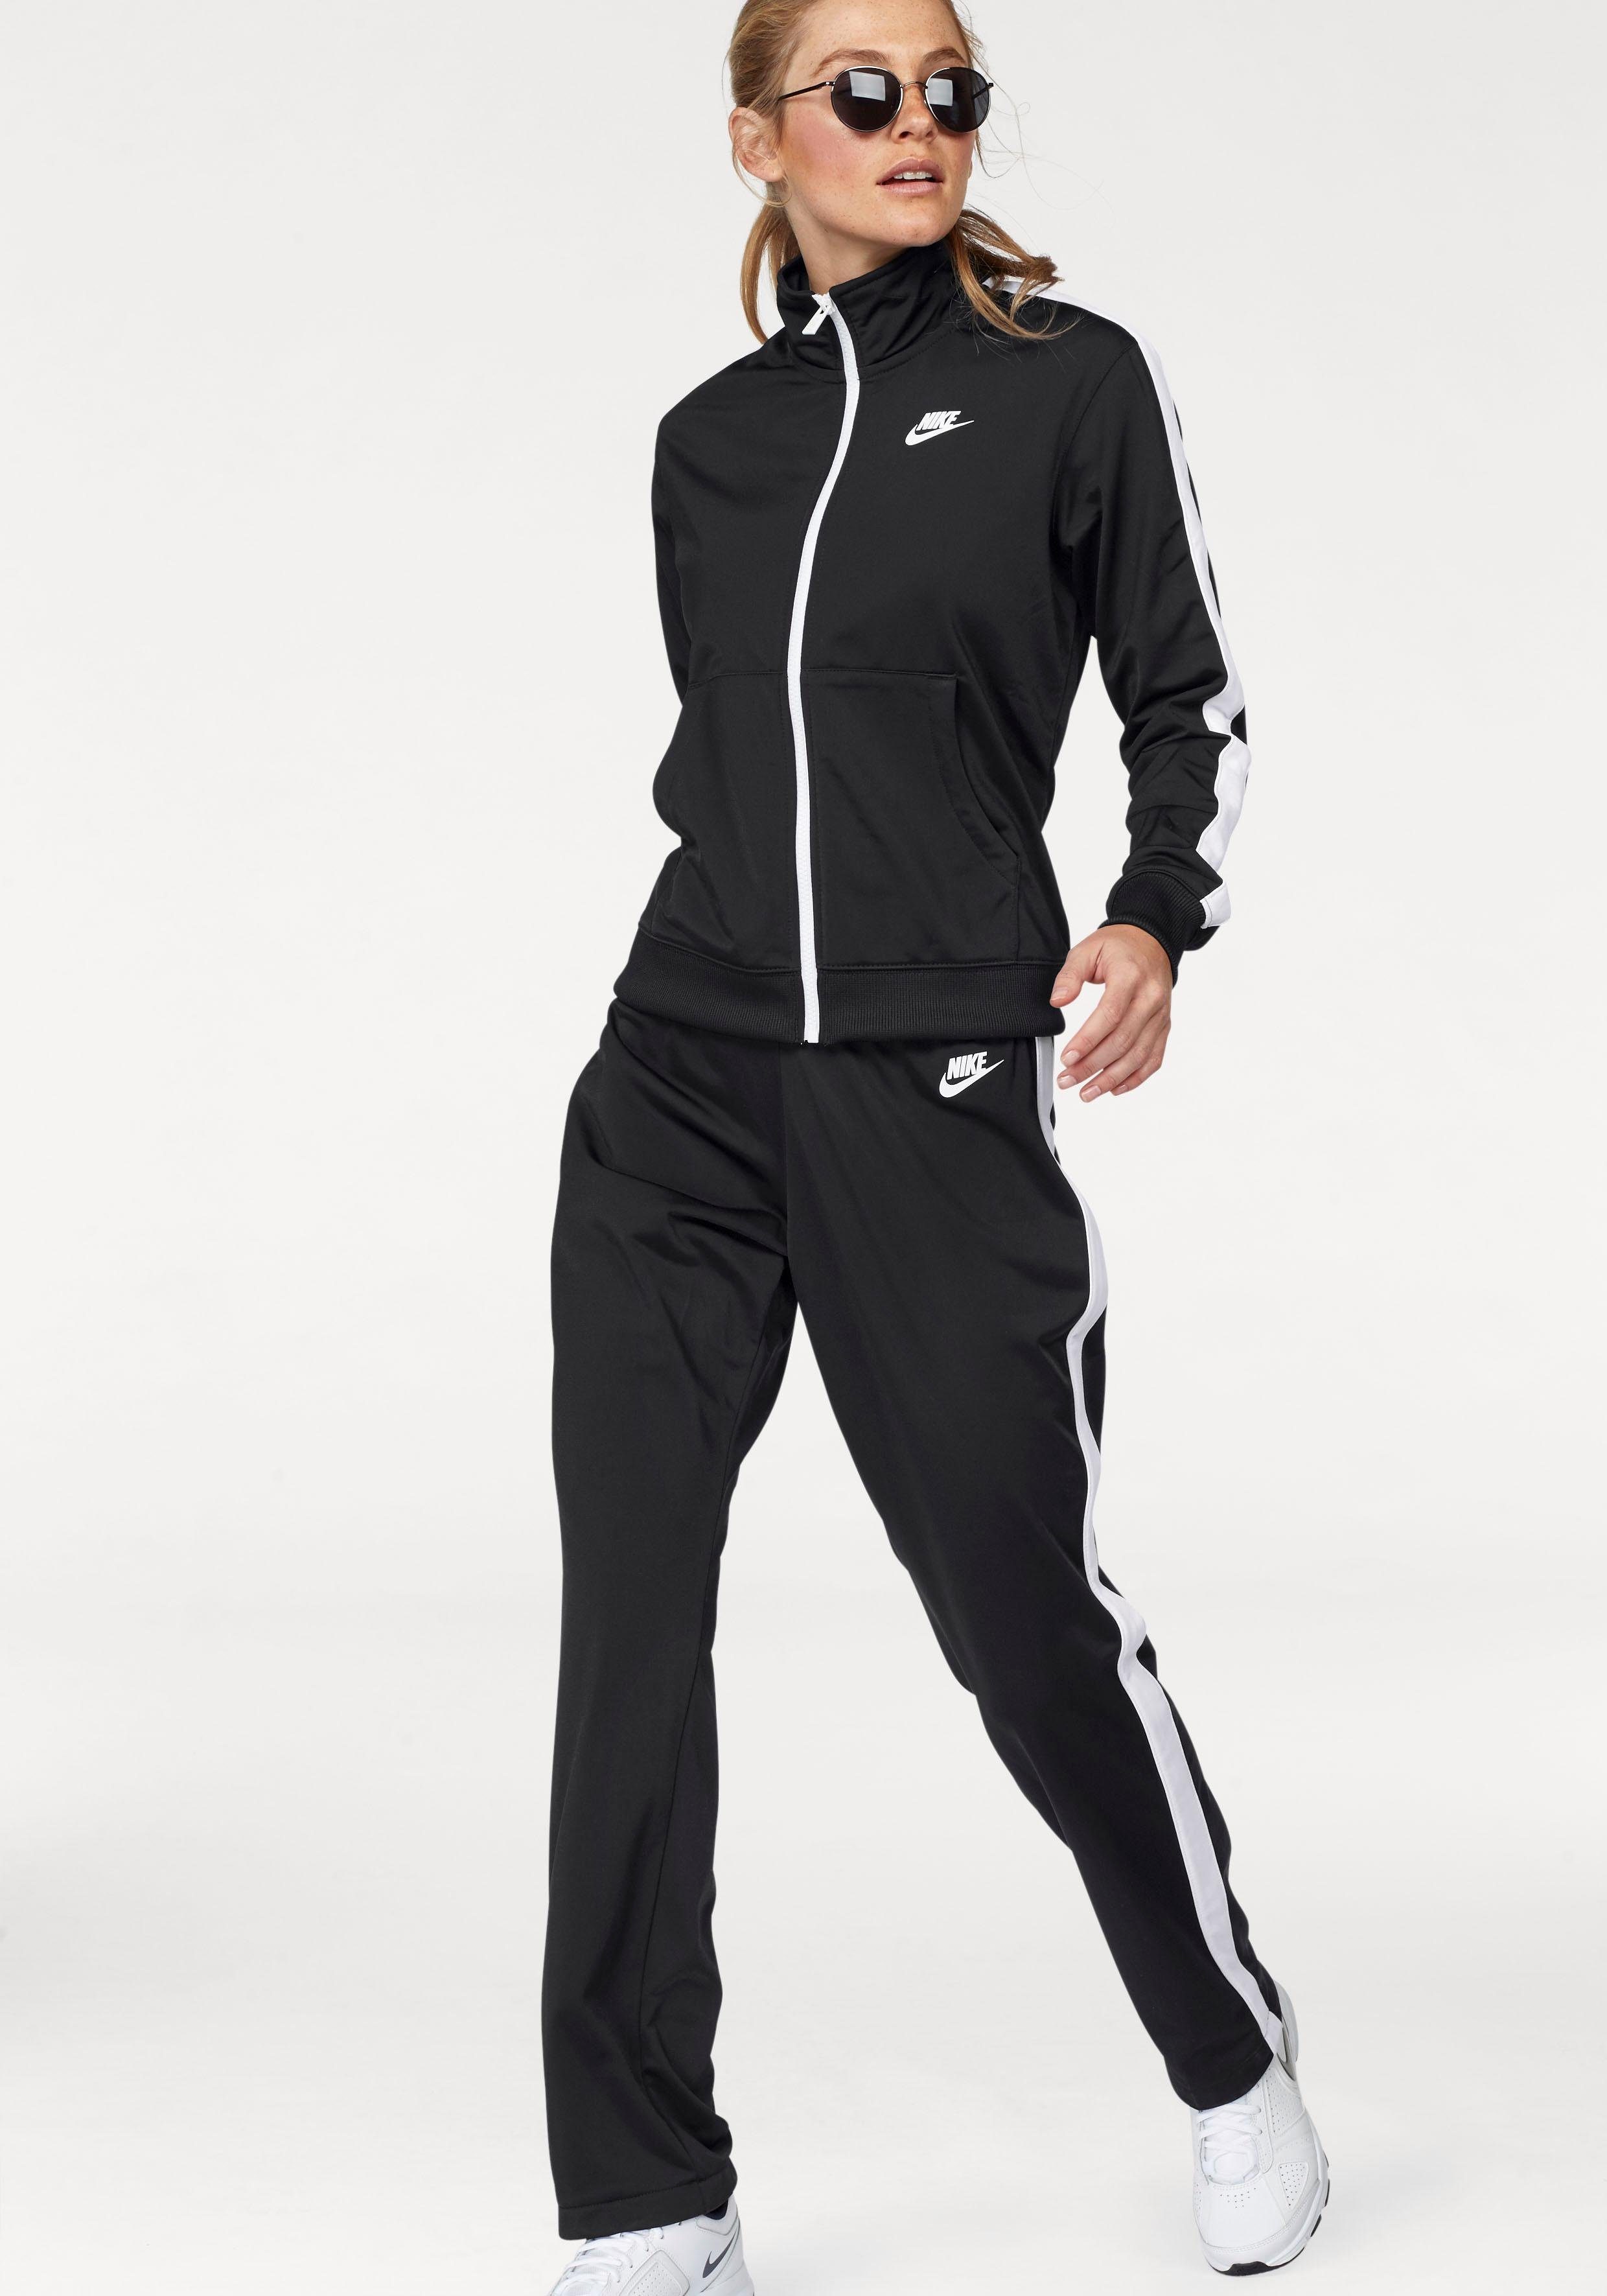 Спортивные nike женские. Nike Tracksuit. Найк раннинг спортивный костюм женский черный. Спортивный костюм Nike Nocta. Спортивный костюм Nike Tracksuit.